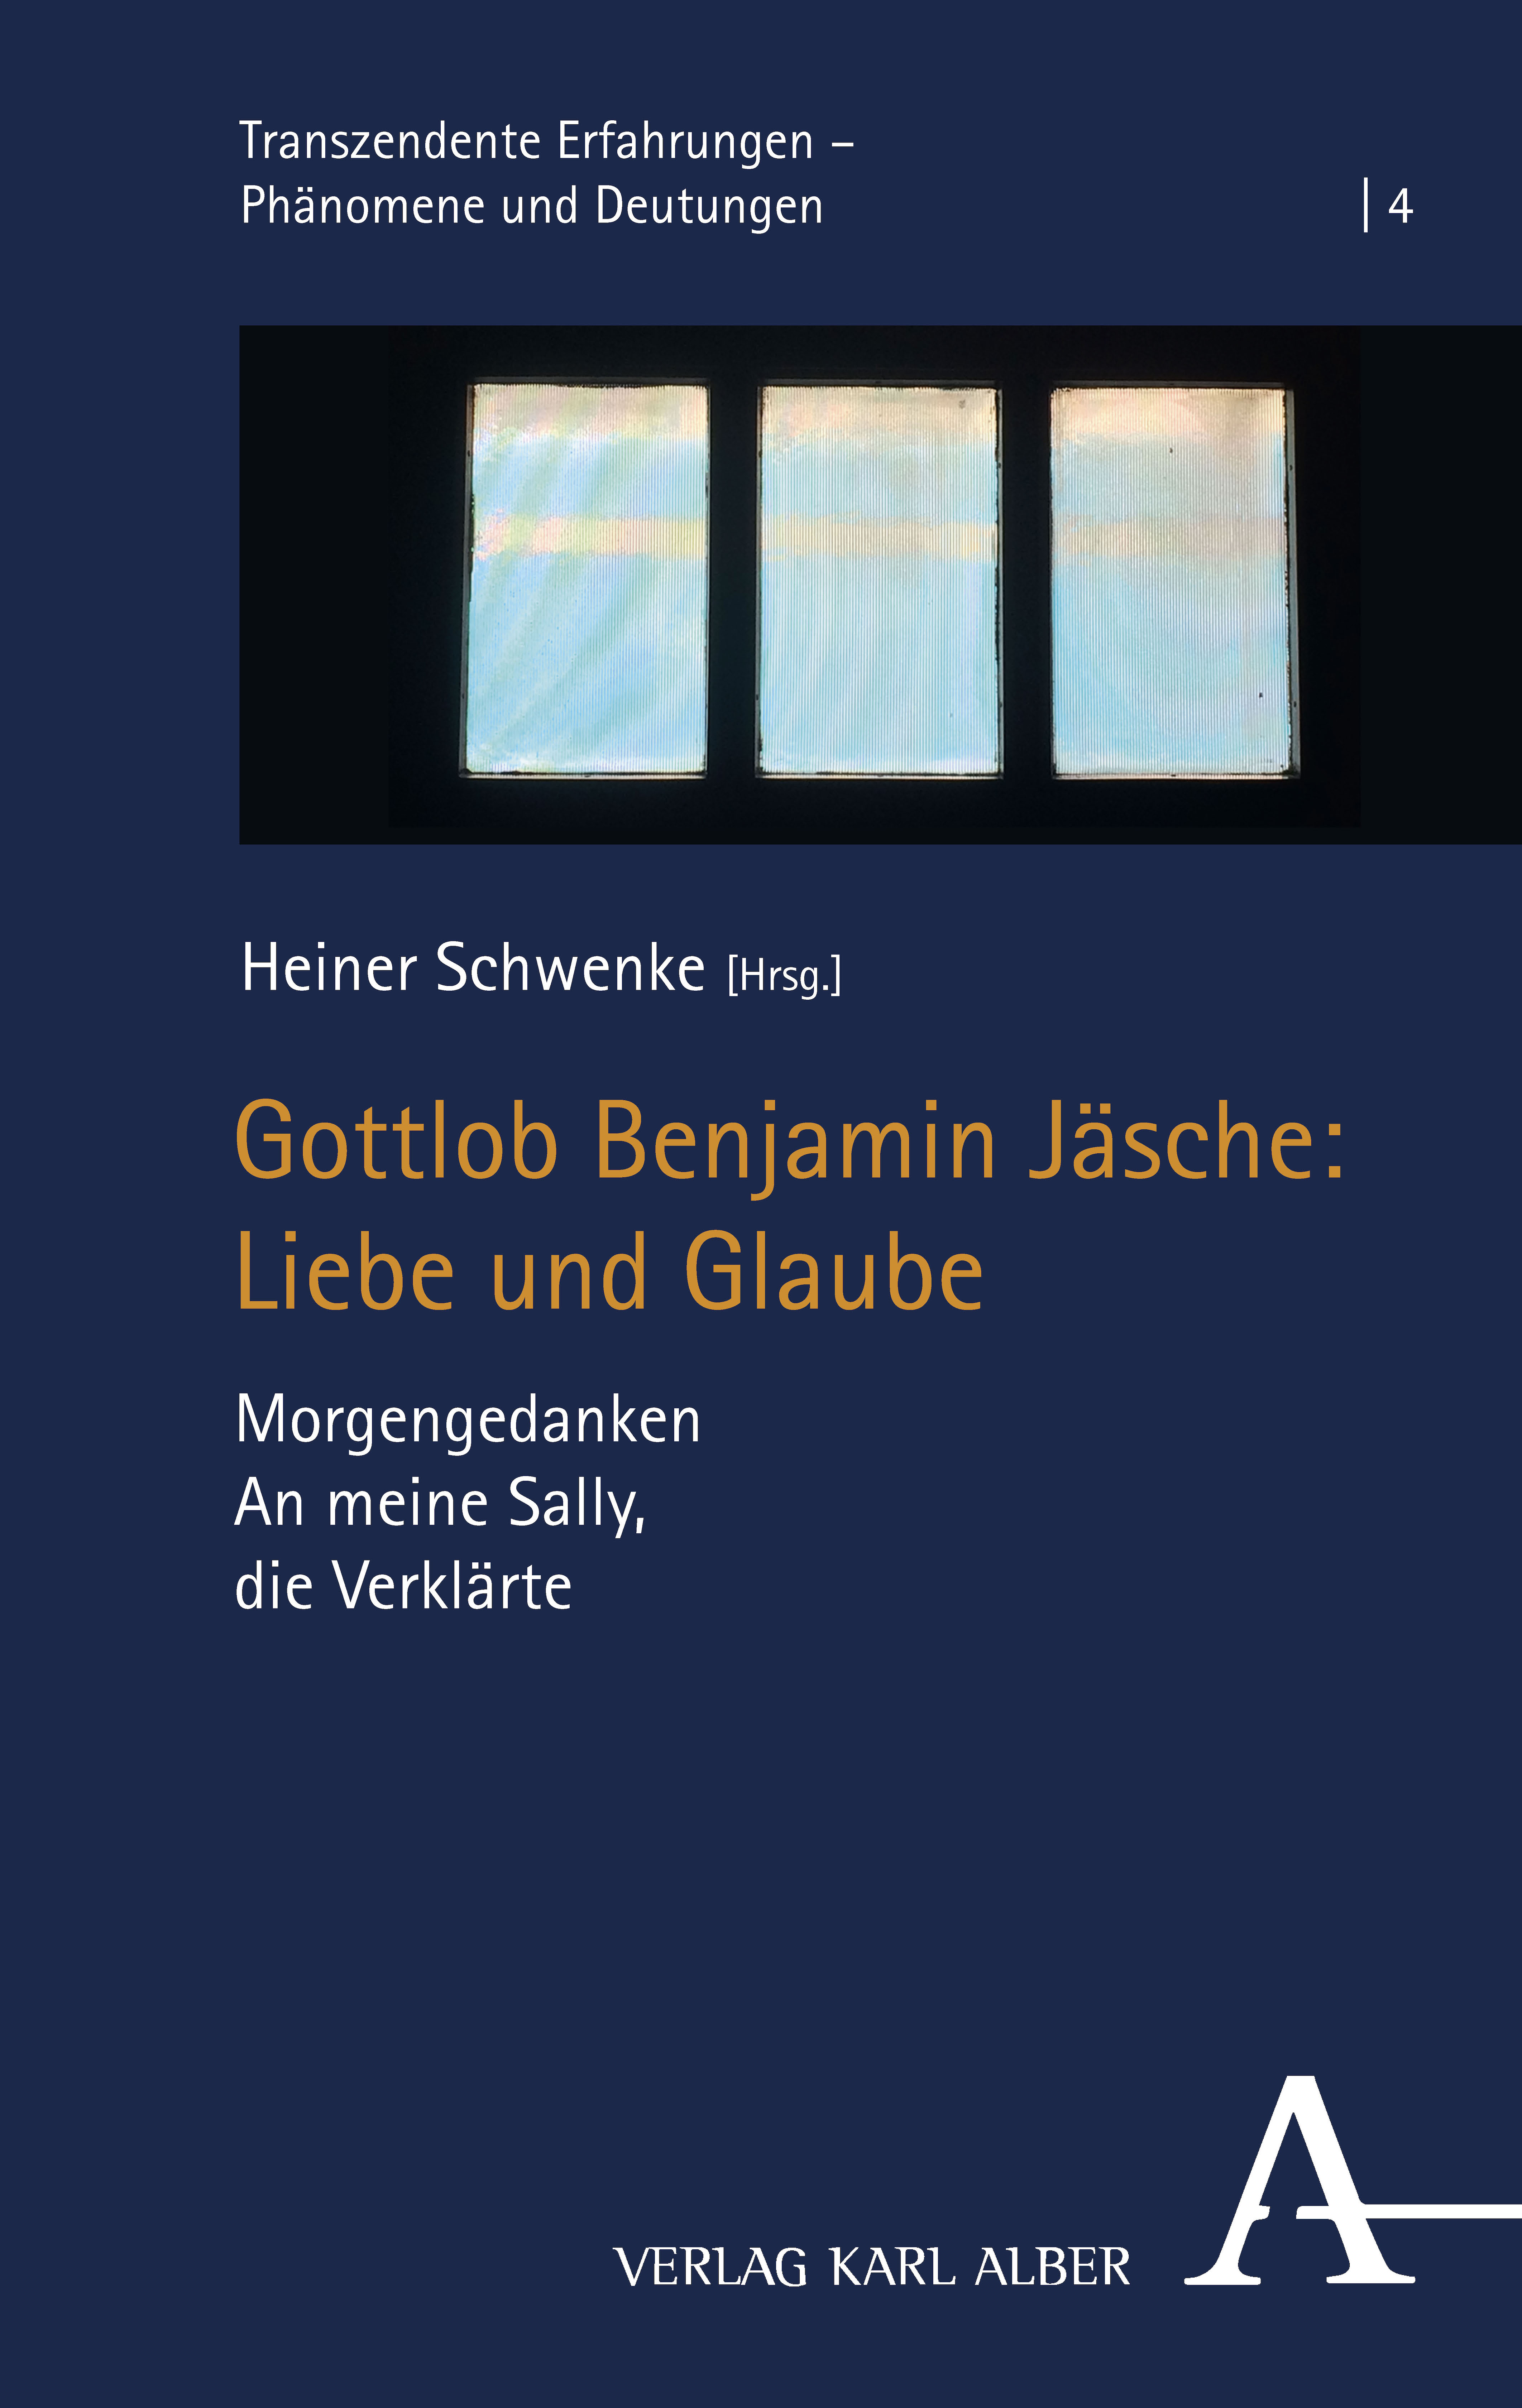 book cover: Heiner Schwenke (Hg.): Gottlob Benjamin Jäsche (2022)